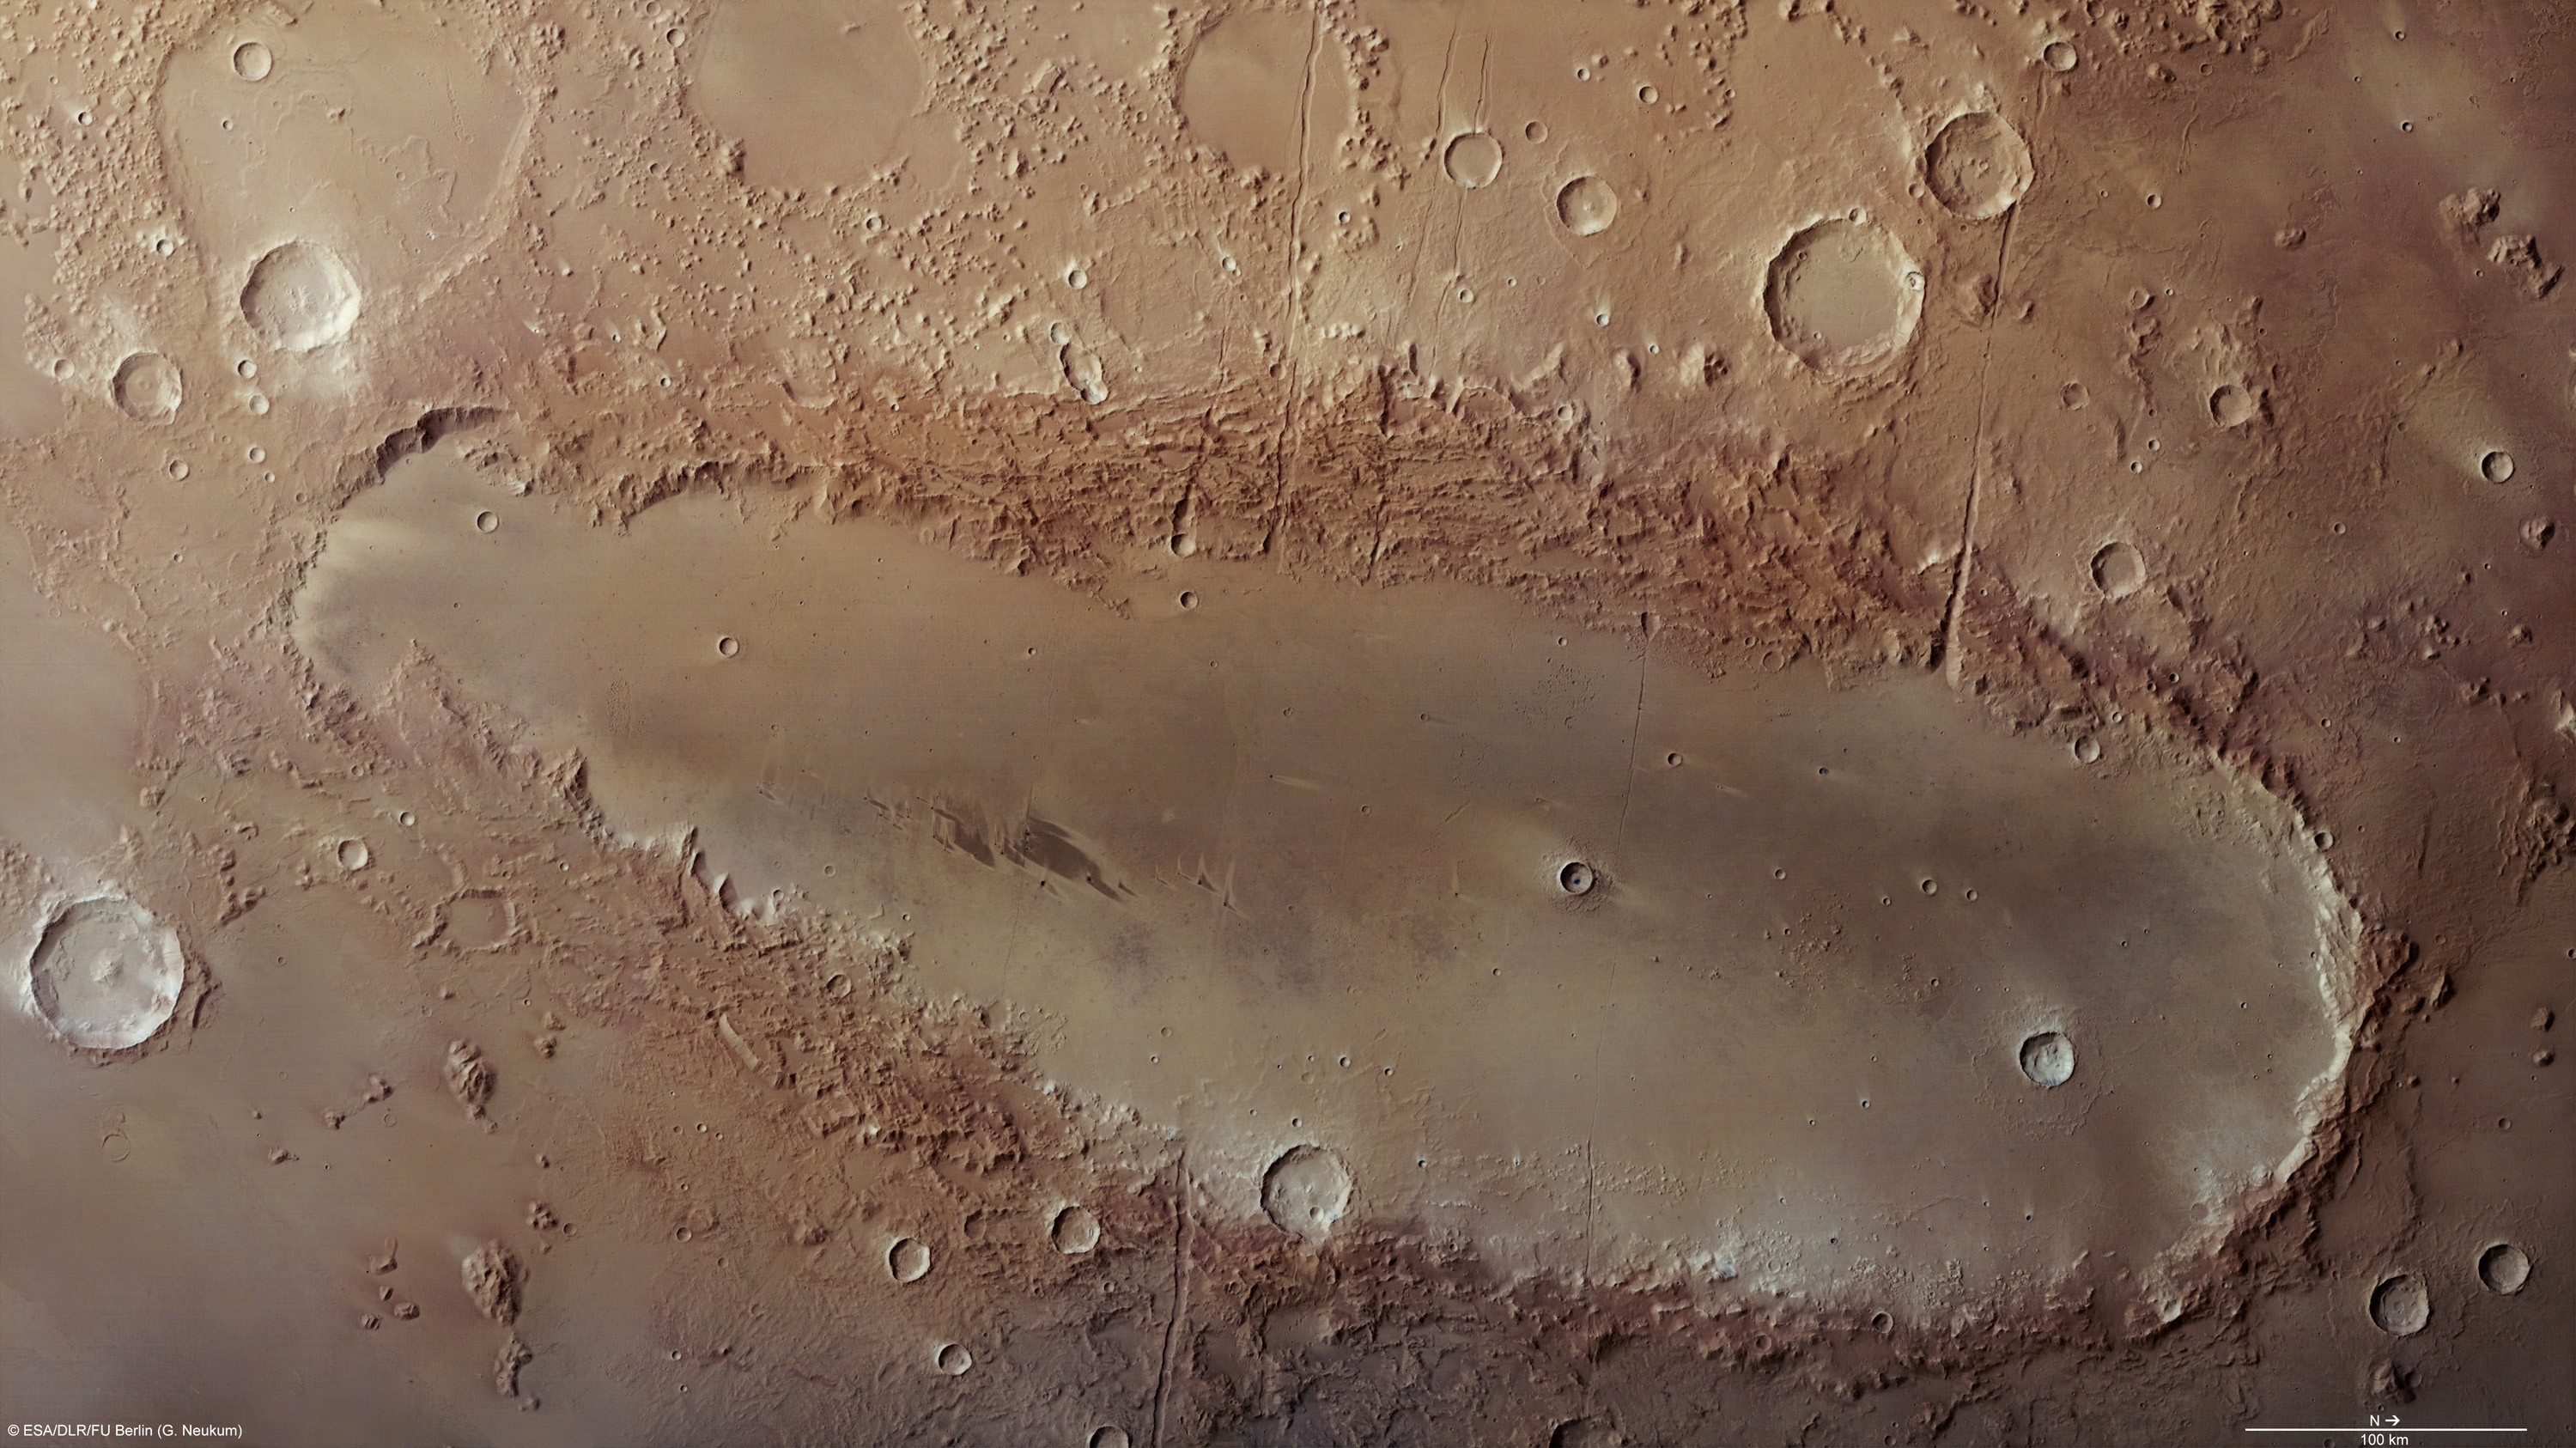 Orcus Patera, une étrange formation martienne allongée photographiée par la sonde européenne&nbsp;Mars Express, intrigue toujours les astronomes. Crédit Esa/DLR/FU Berlin (G. Neukum)